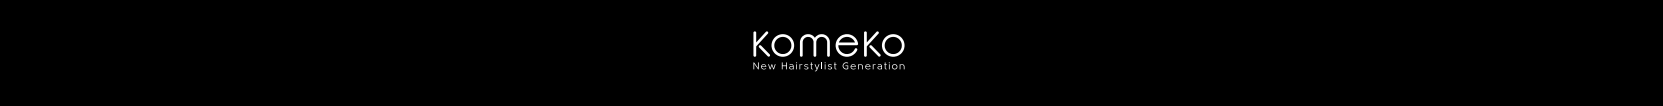 komeko logo